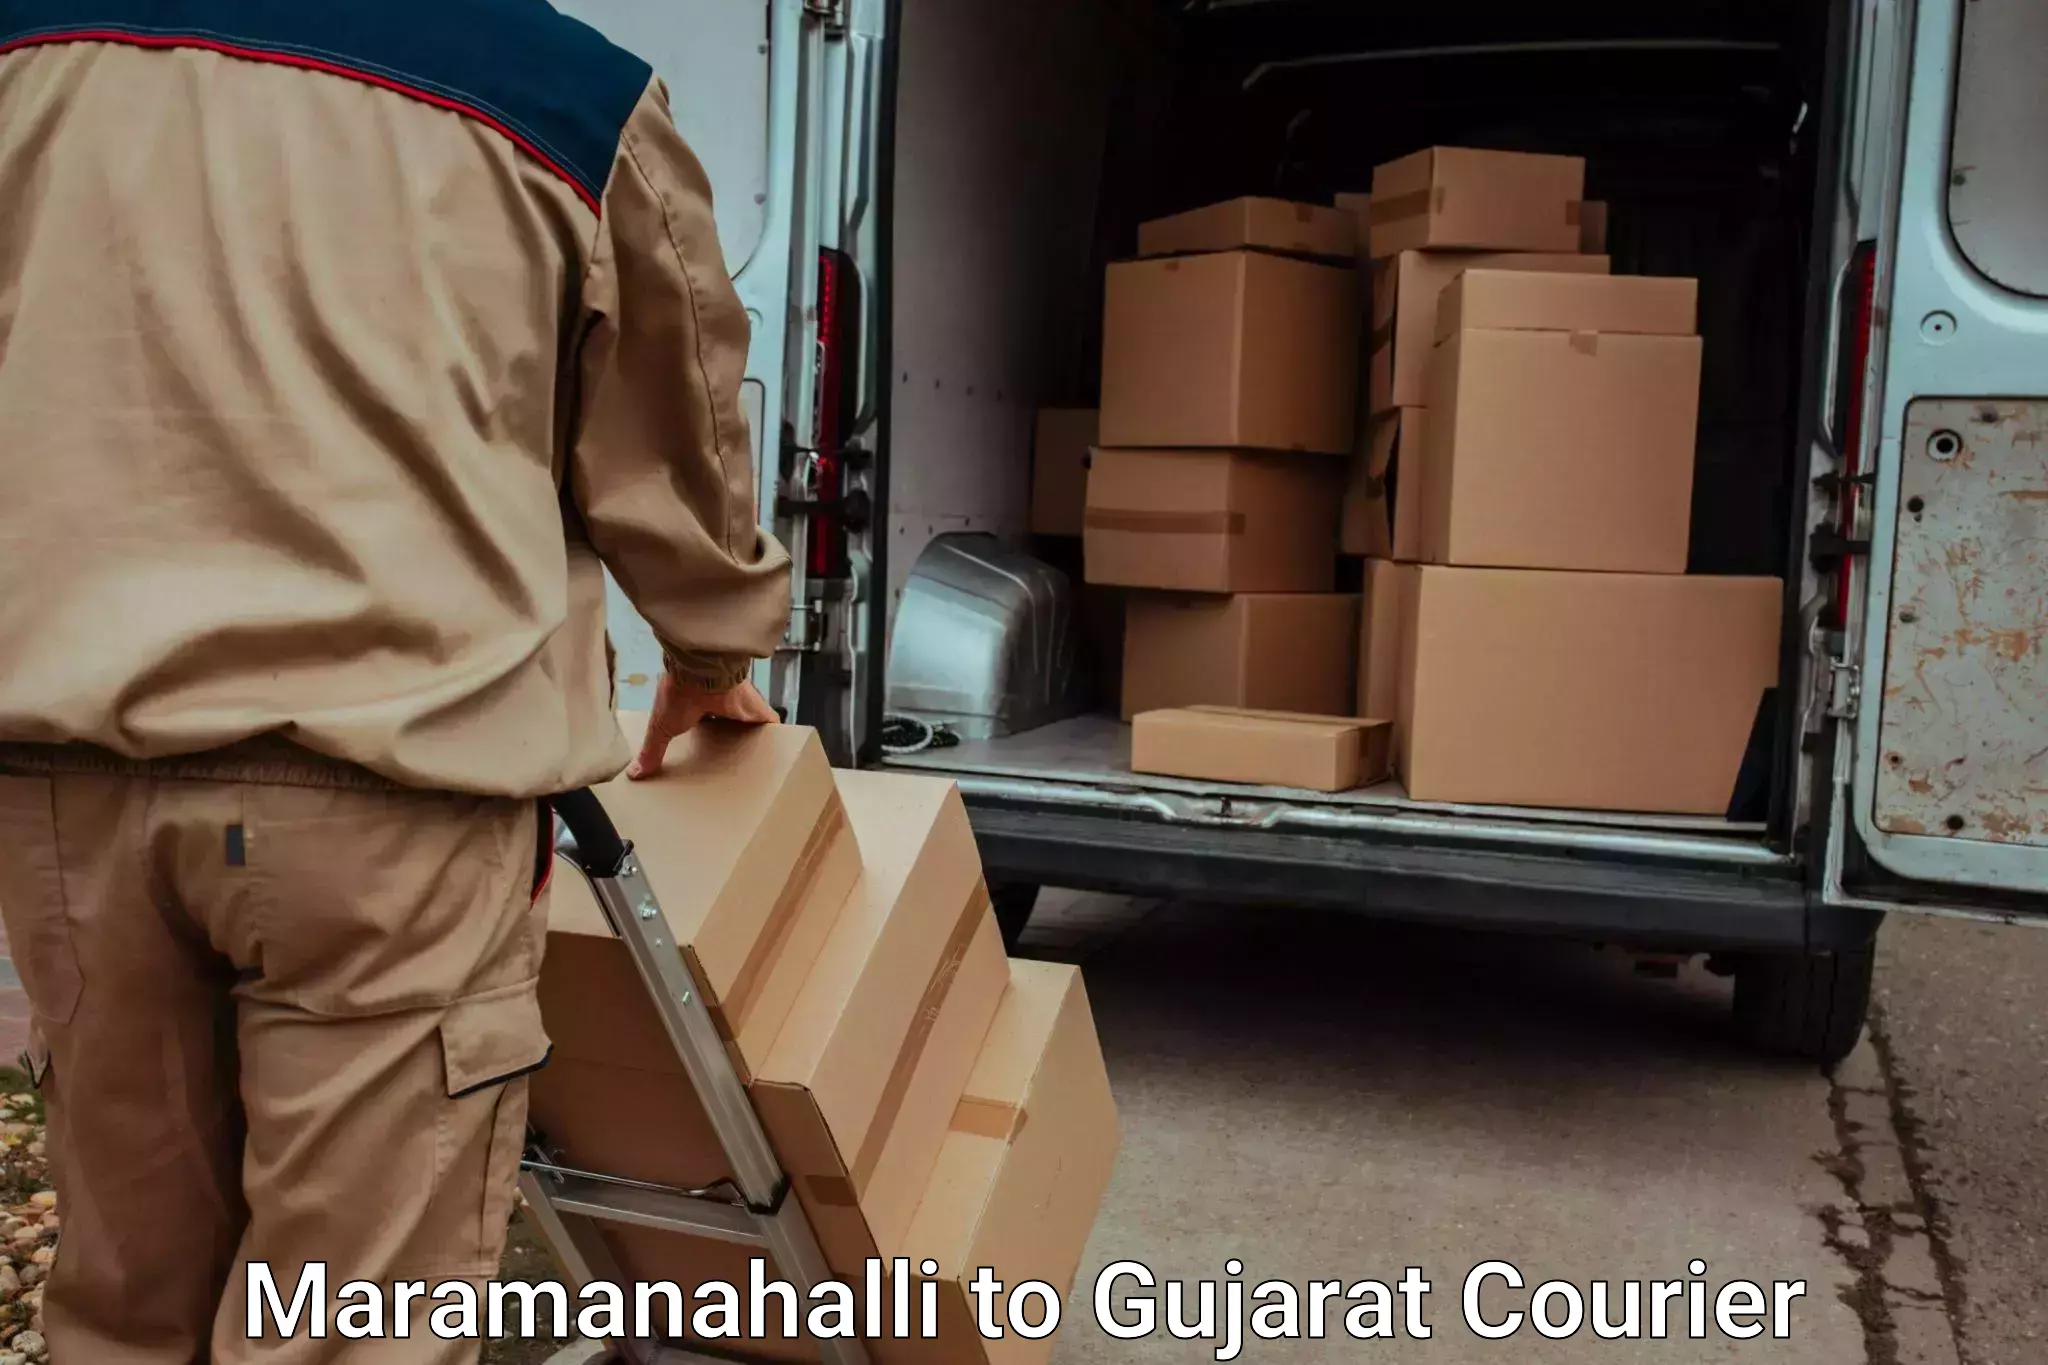 Moving and handling services Maramanahalli to Gandhinagar